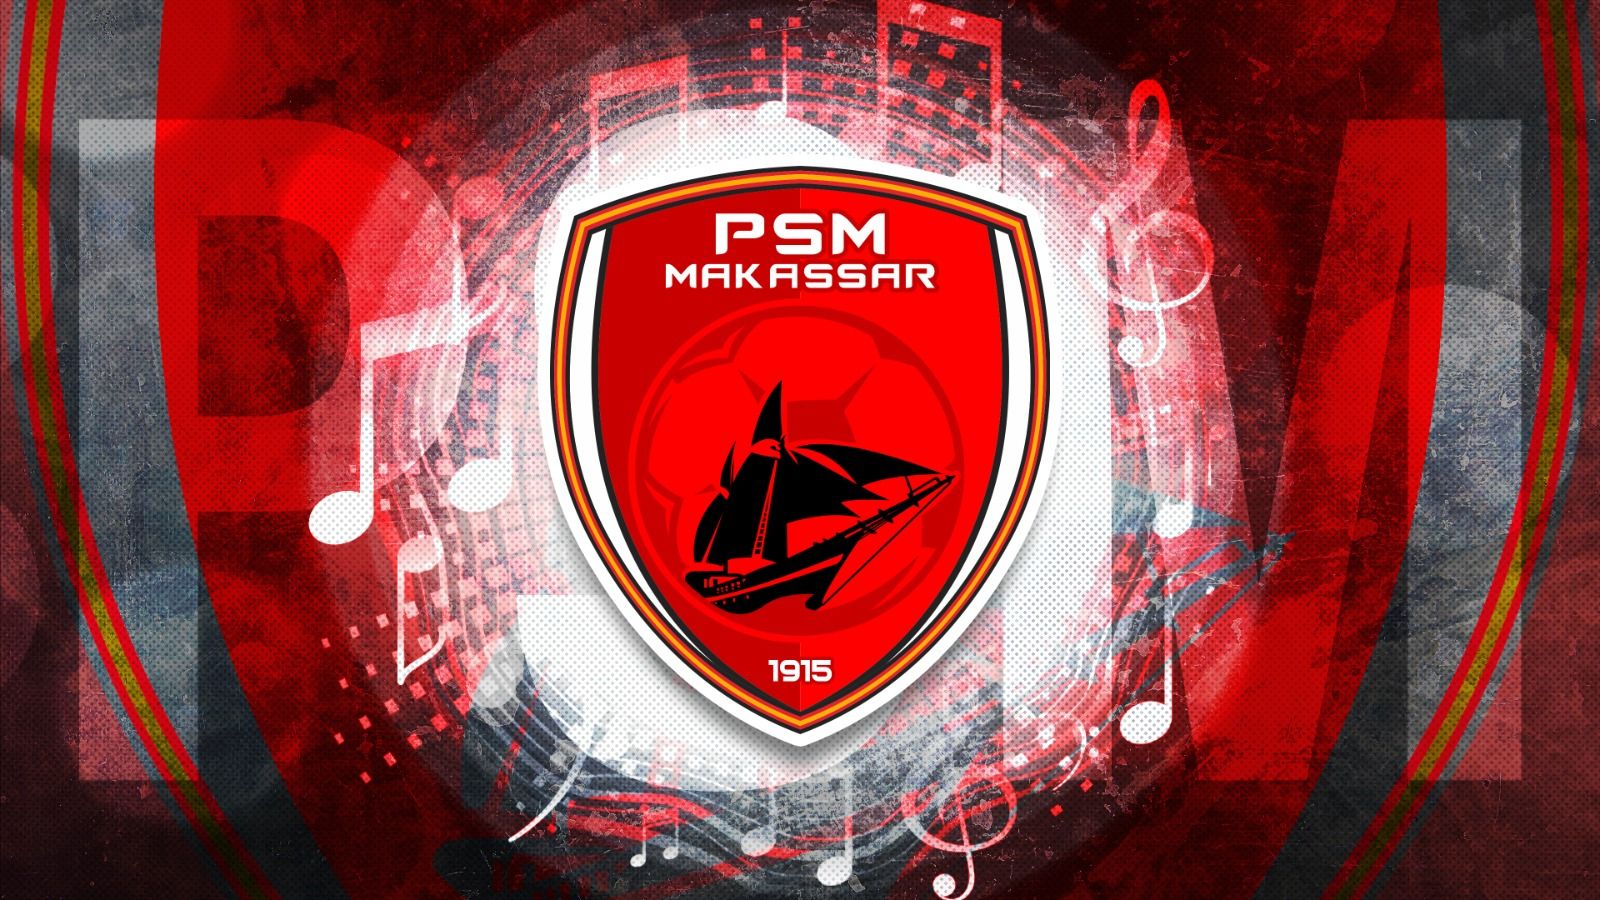 Logo PSM Makassar berkaitan dengan musik. (Grafis: Dede Mauladi/Skor.id)